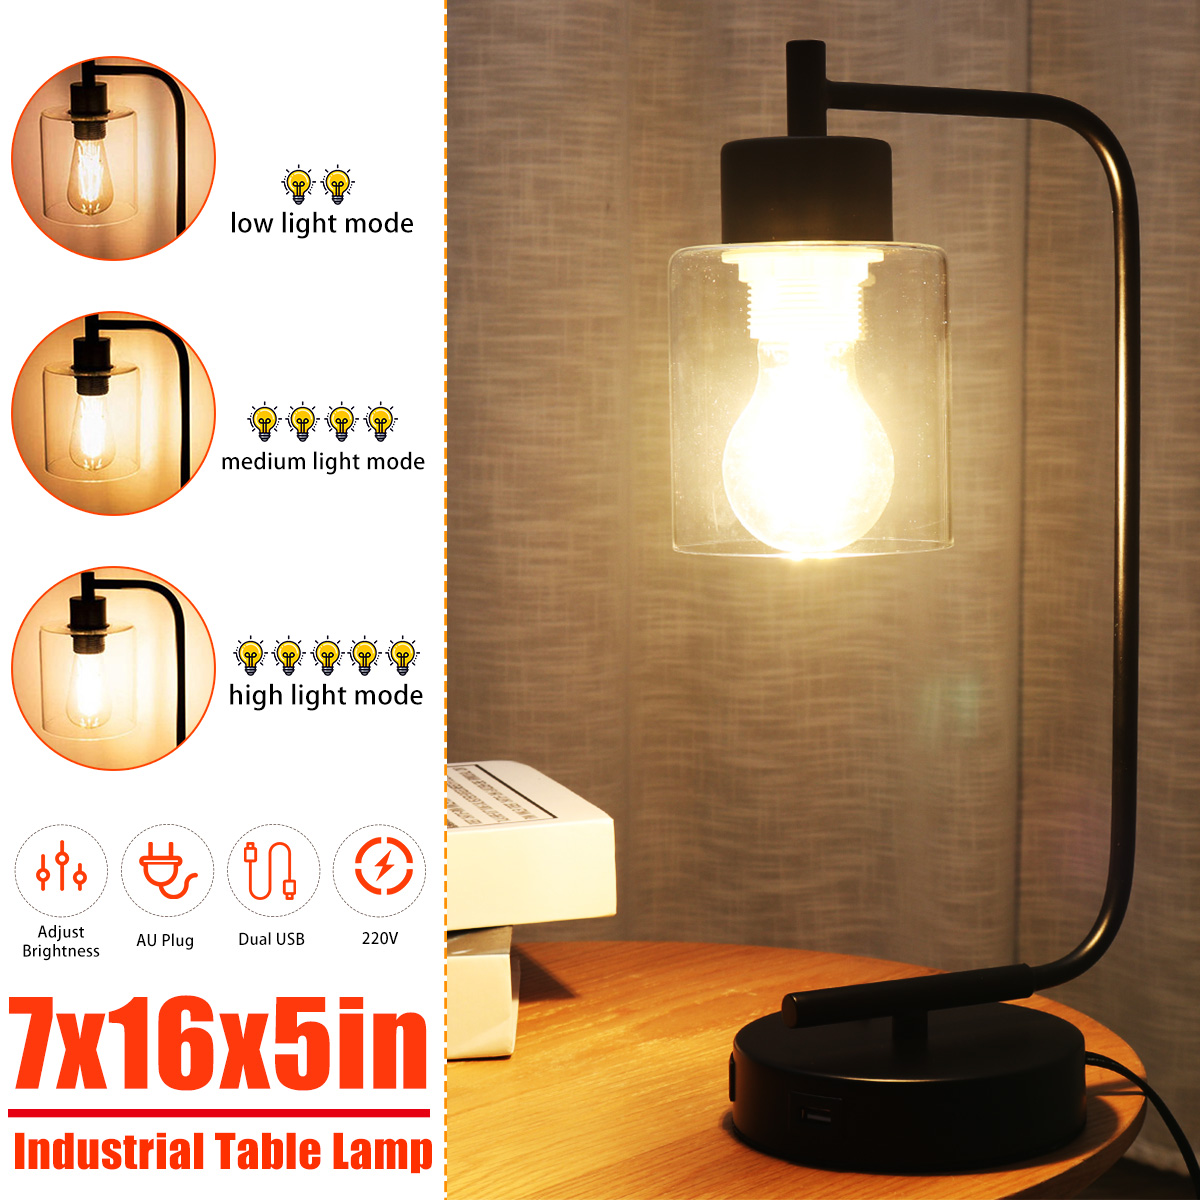 Modern-Table-Lamp-Industrial-Bedside-Desk-Light-Bulb-Lampshade-Bedroom-Home-220V-1776831-1